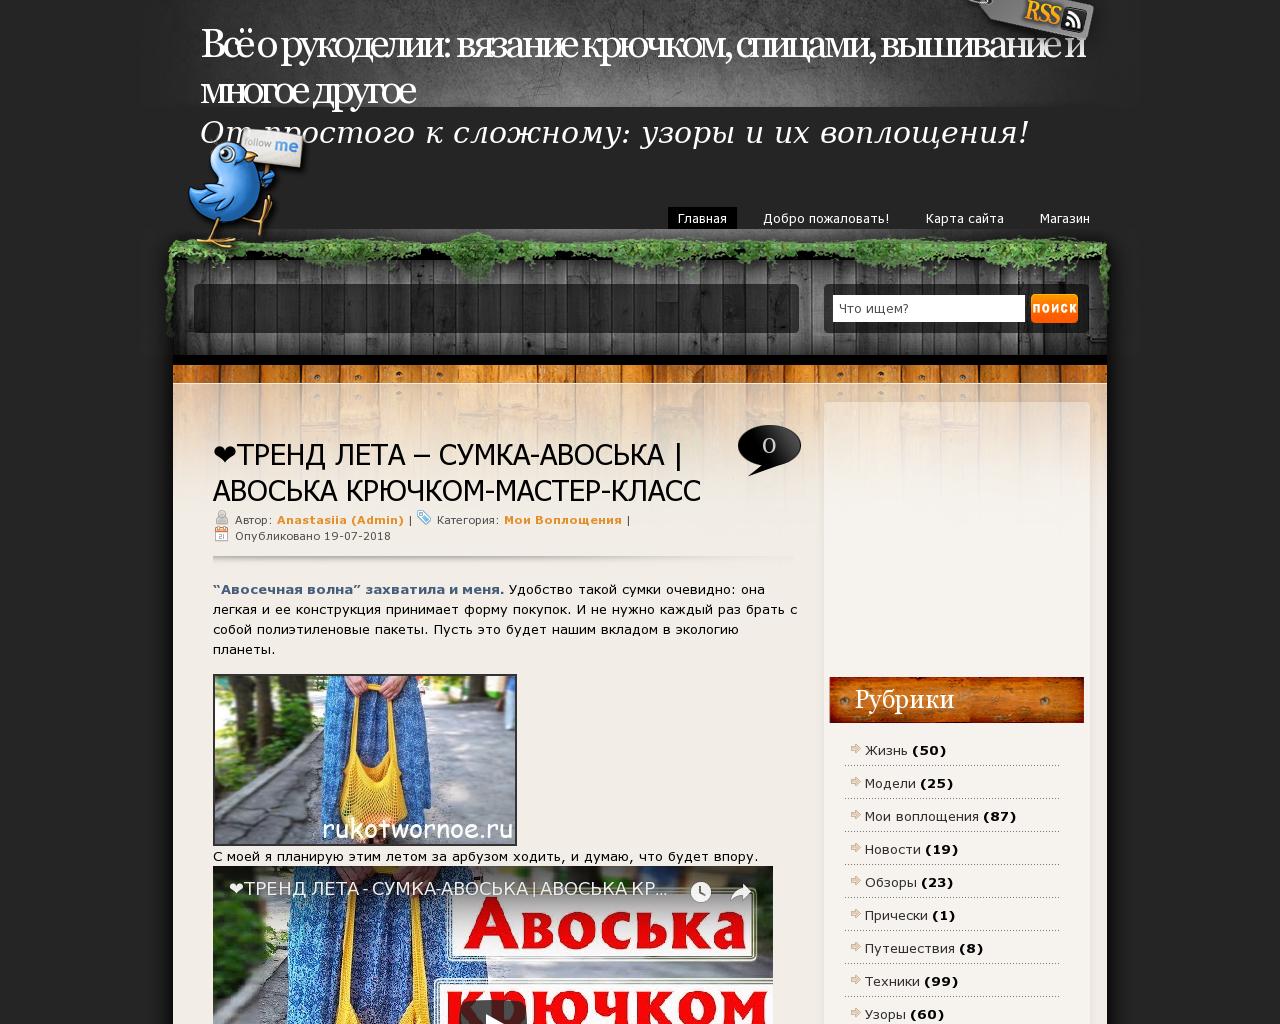 Изображение сайта rukotwornoe.ru в разрешении 1280x1024